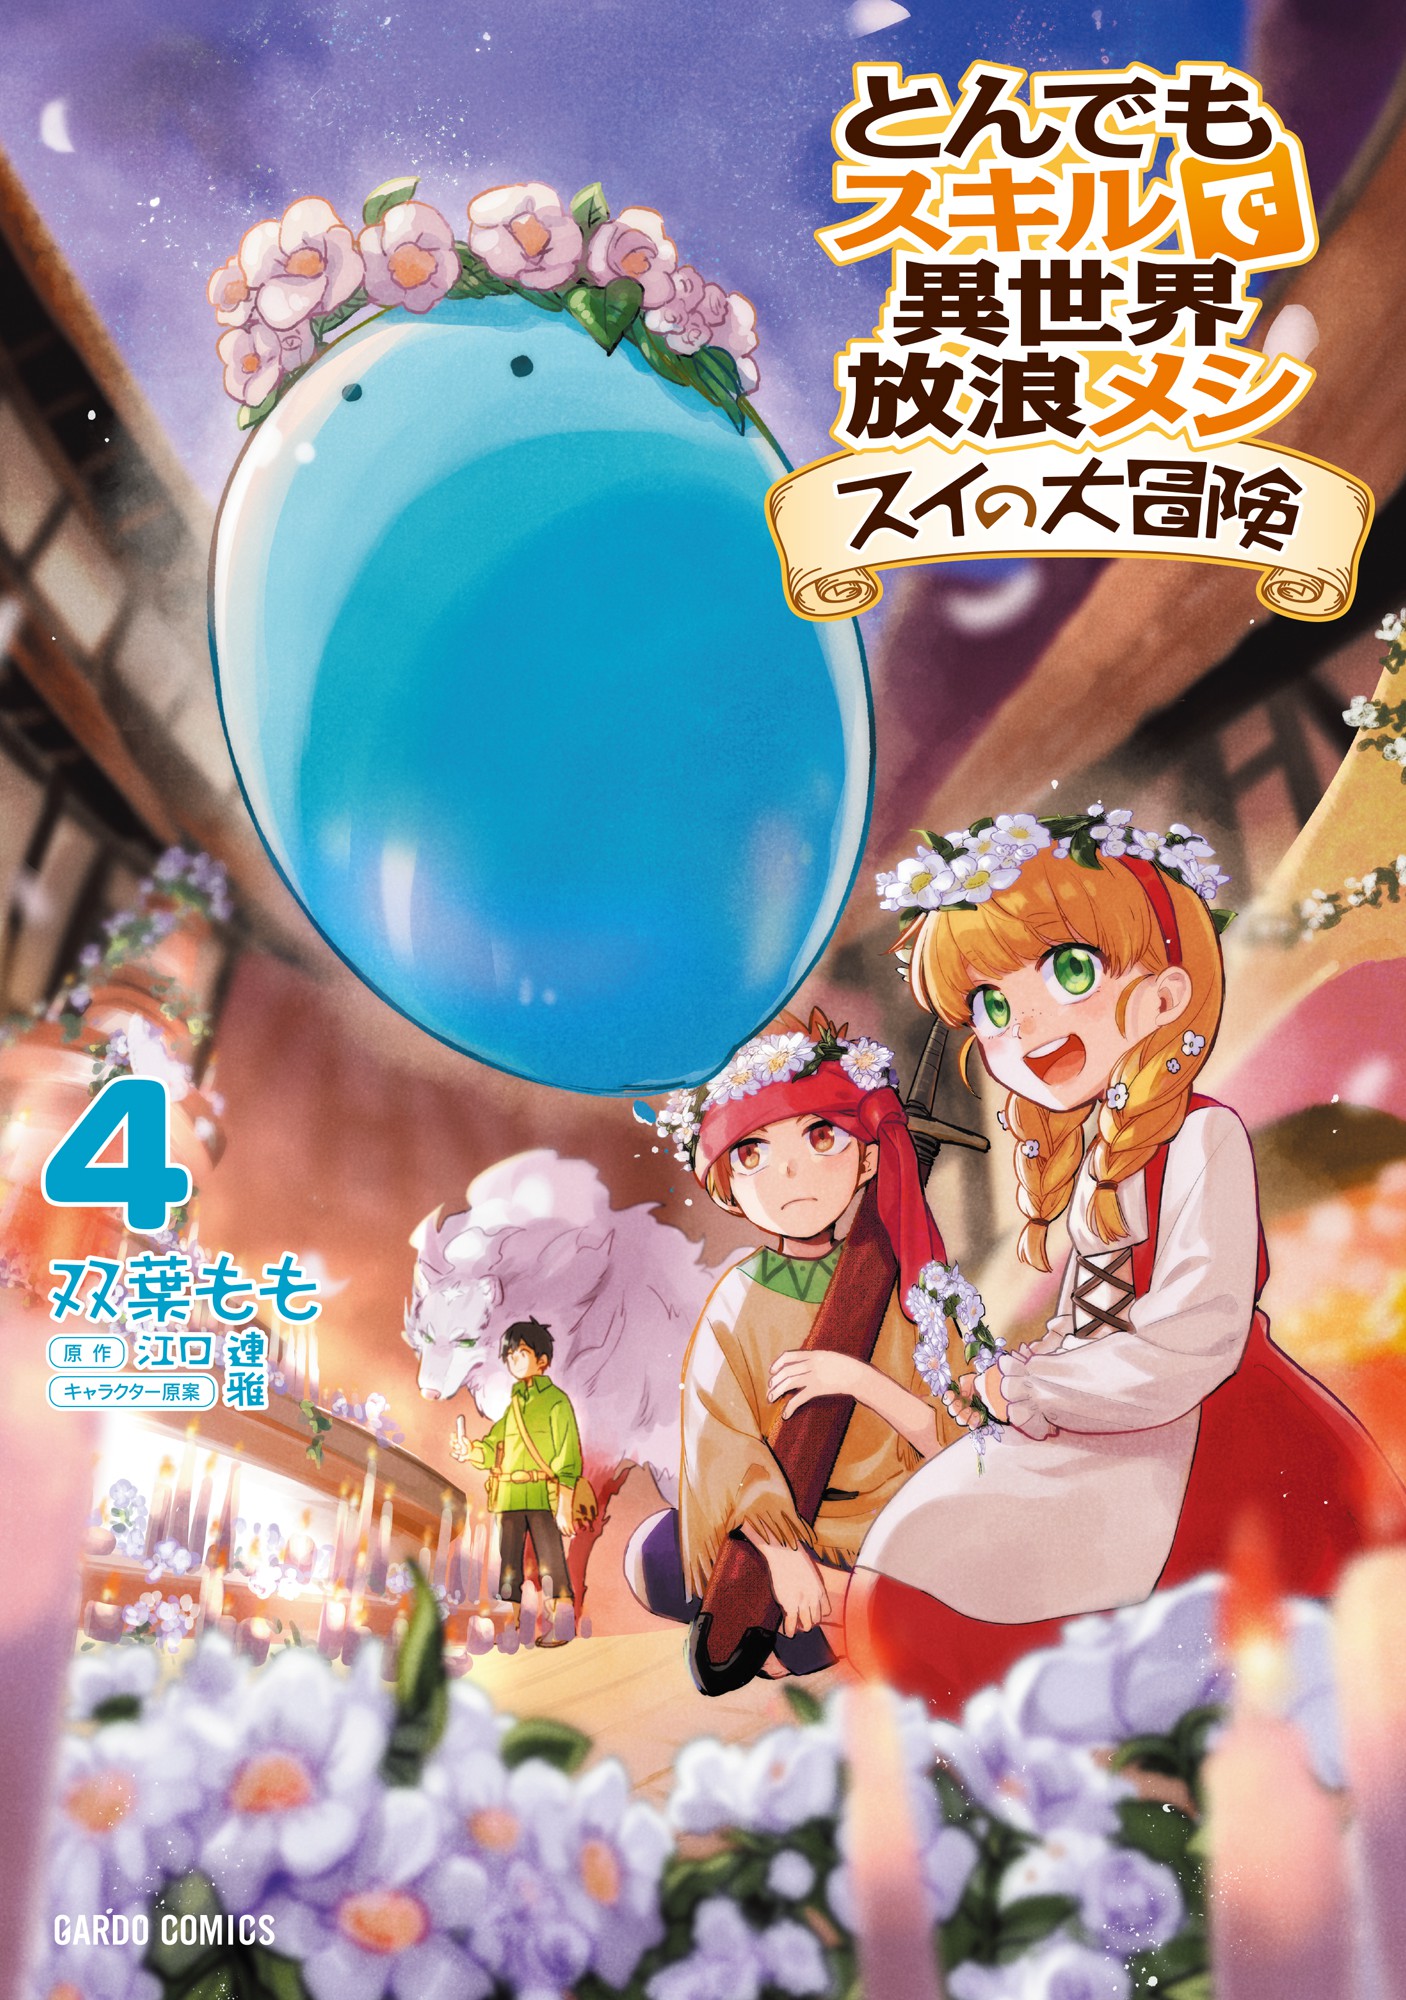 Tondemo Skill de Isekai Hourou Meshi: Sui no Daibouken Manga - Chapter 11 -  Manga Rock Team - Read Manga Online For Free